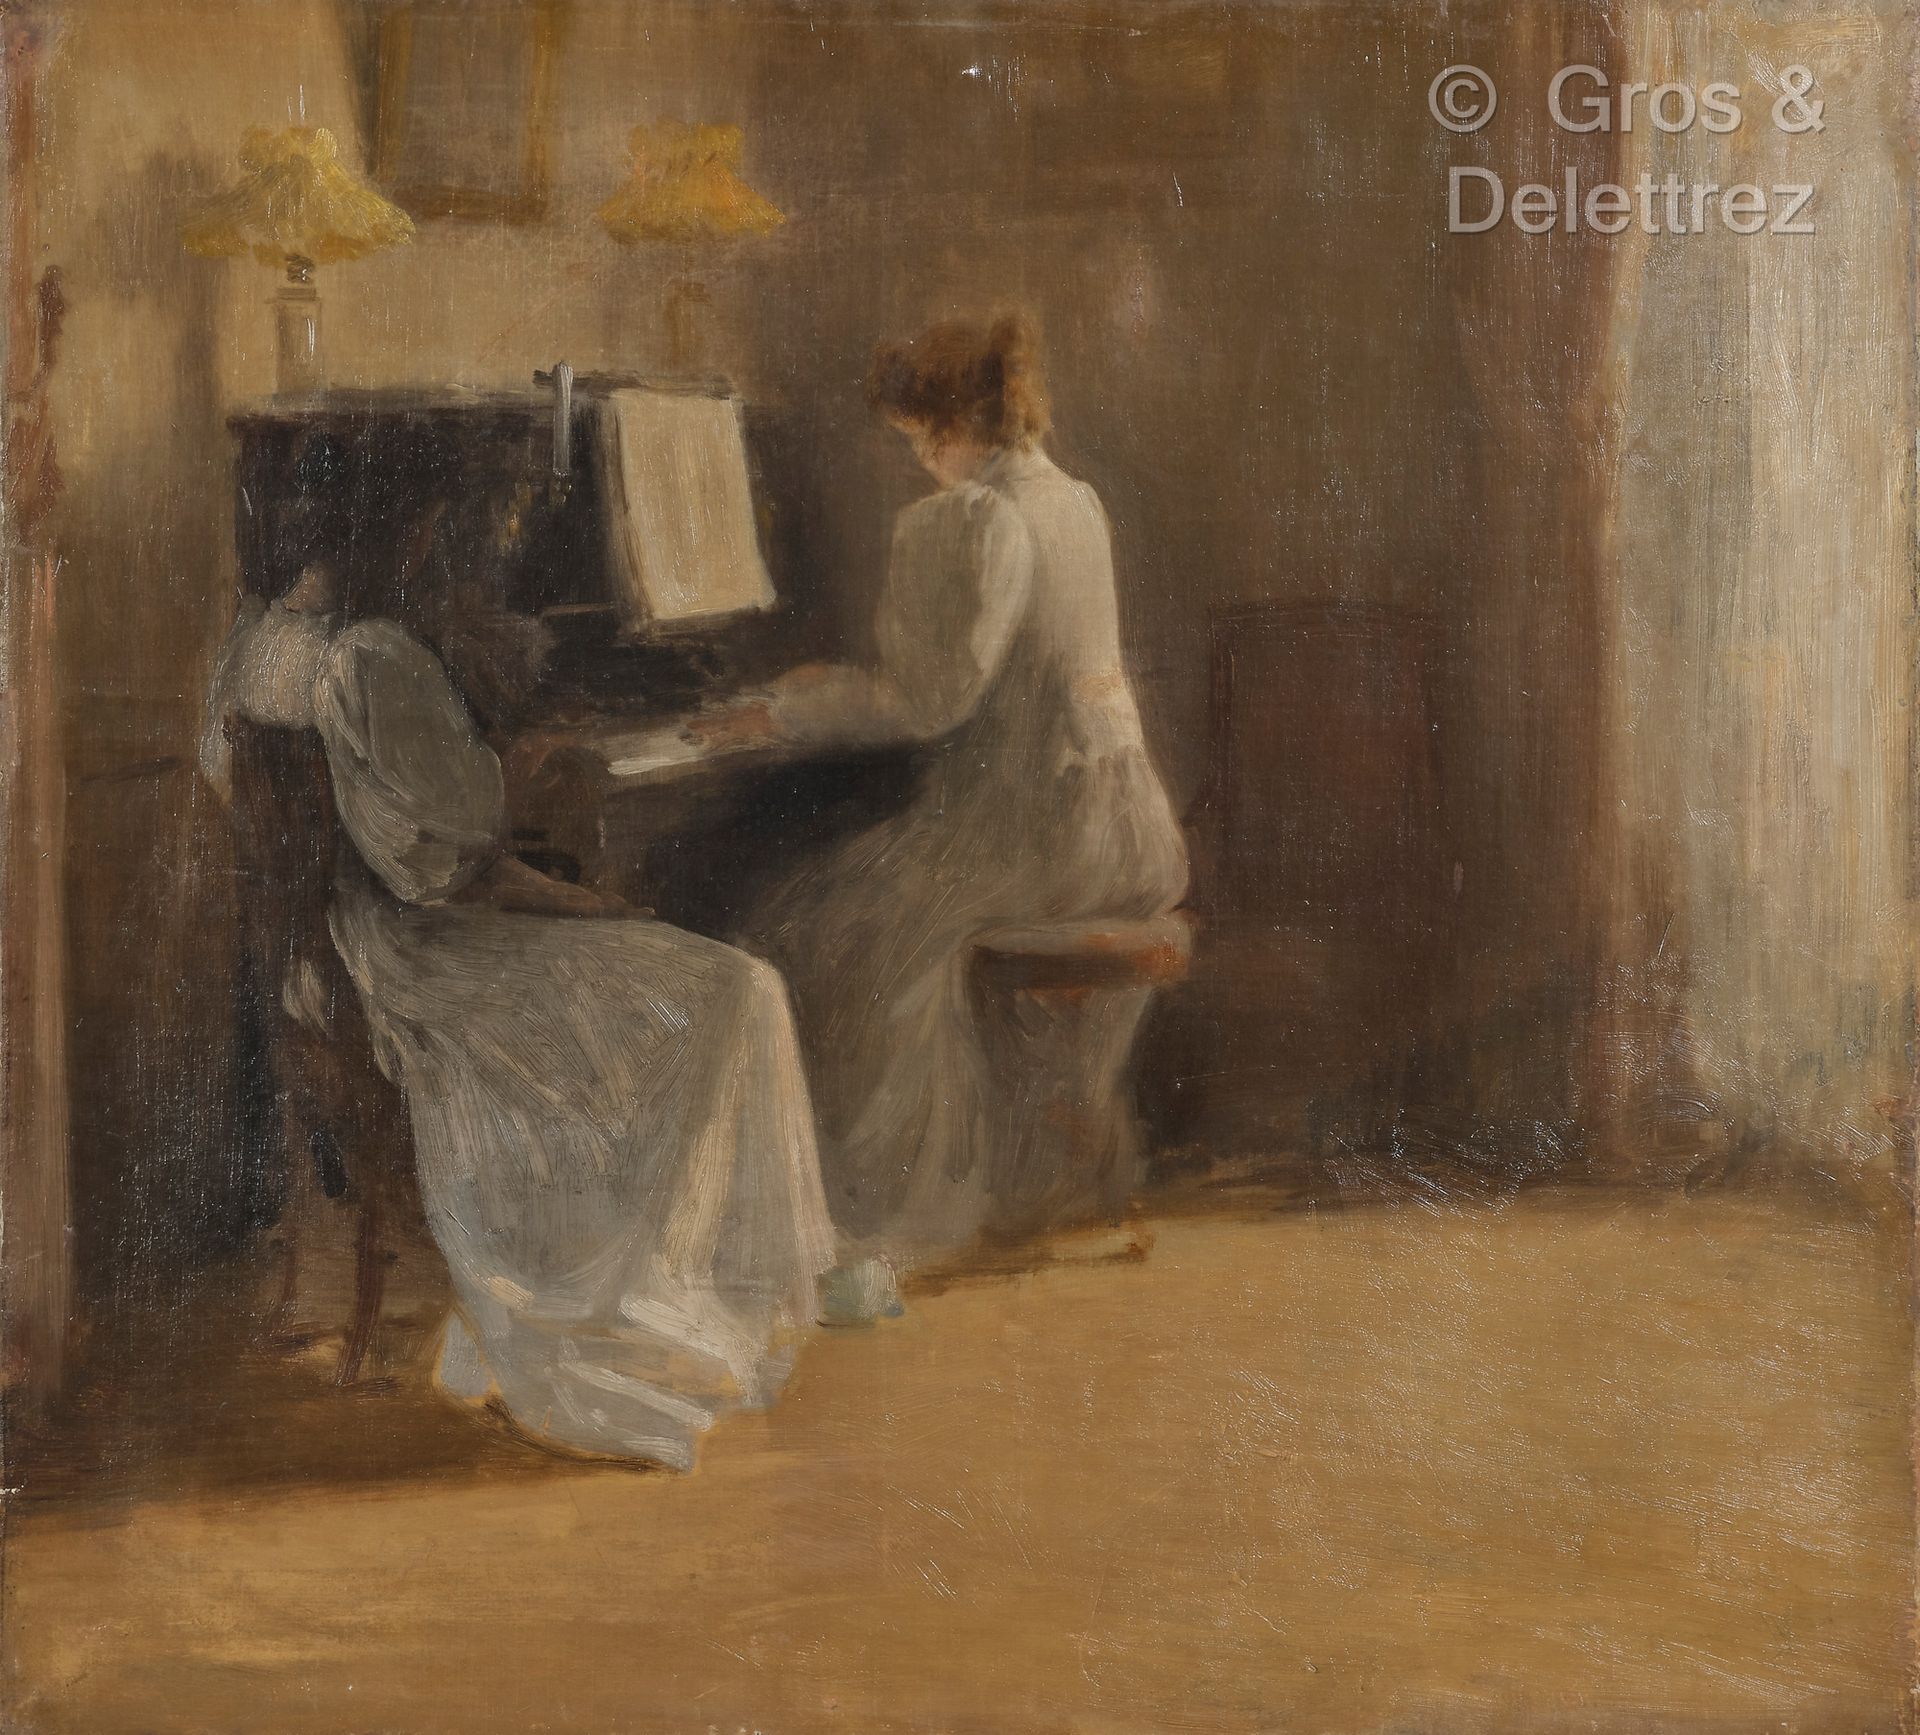 Null 亨利-勒罗尔(1848-1929)
克里斯蒂娜和伊冯娜-勒罗尔在钢琴旁
布面油画
50 x 56 cm

出处
来自Adrien Mithouard的&hellip;